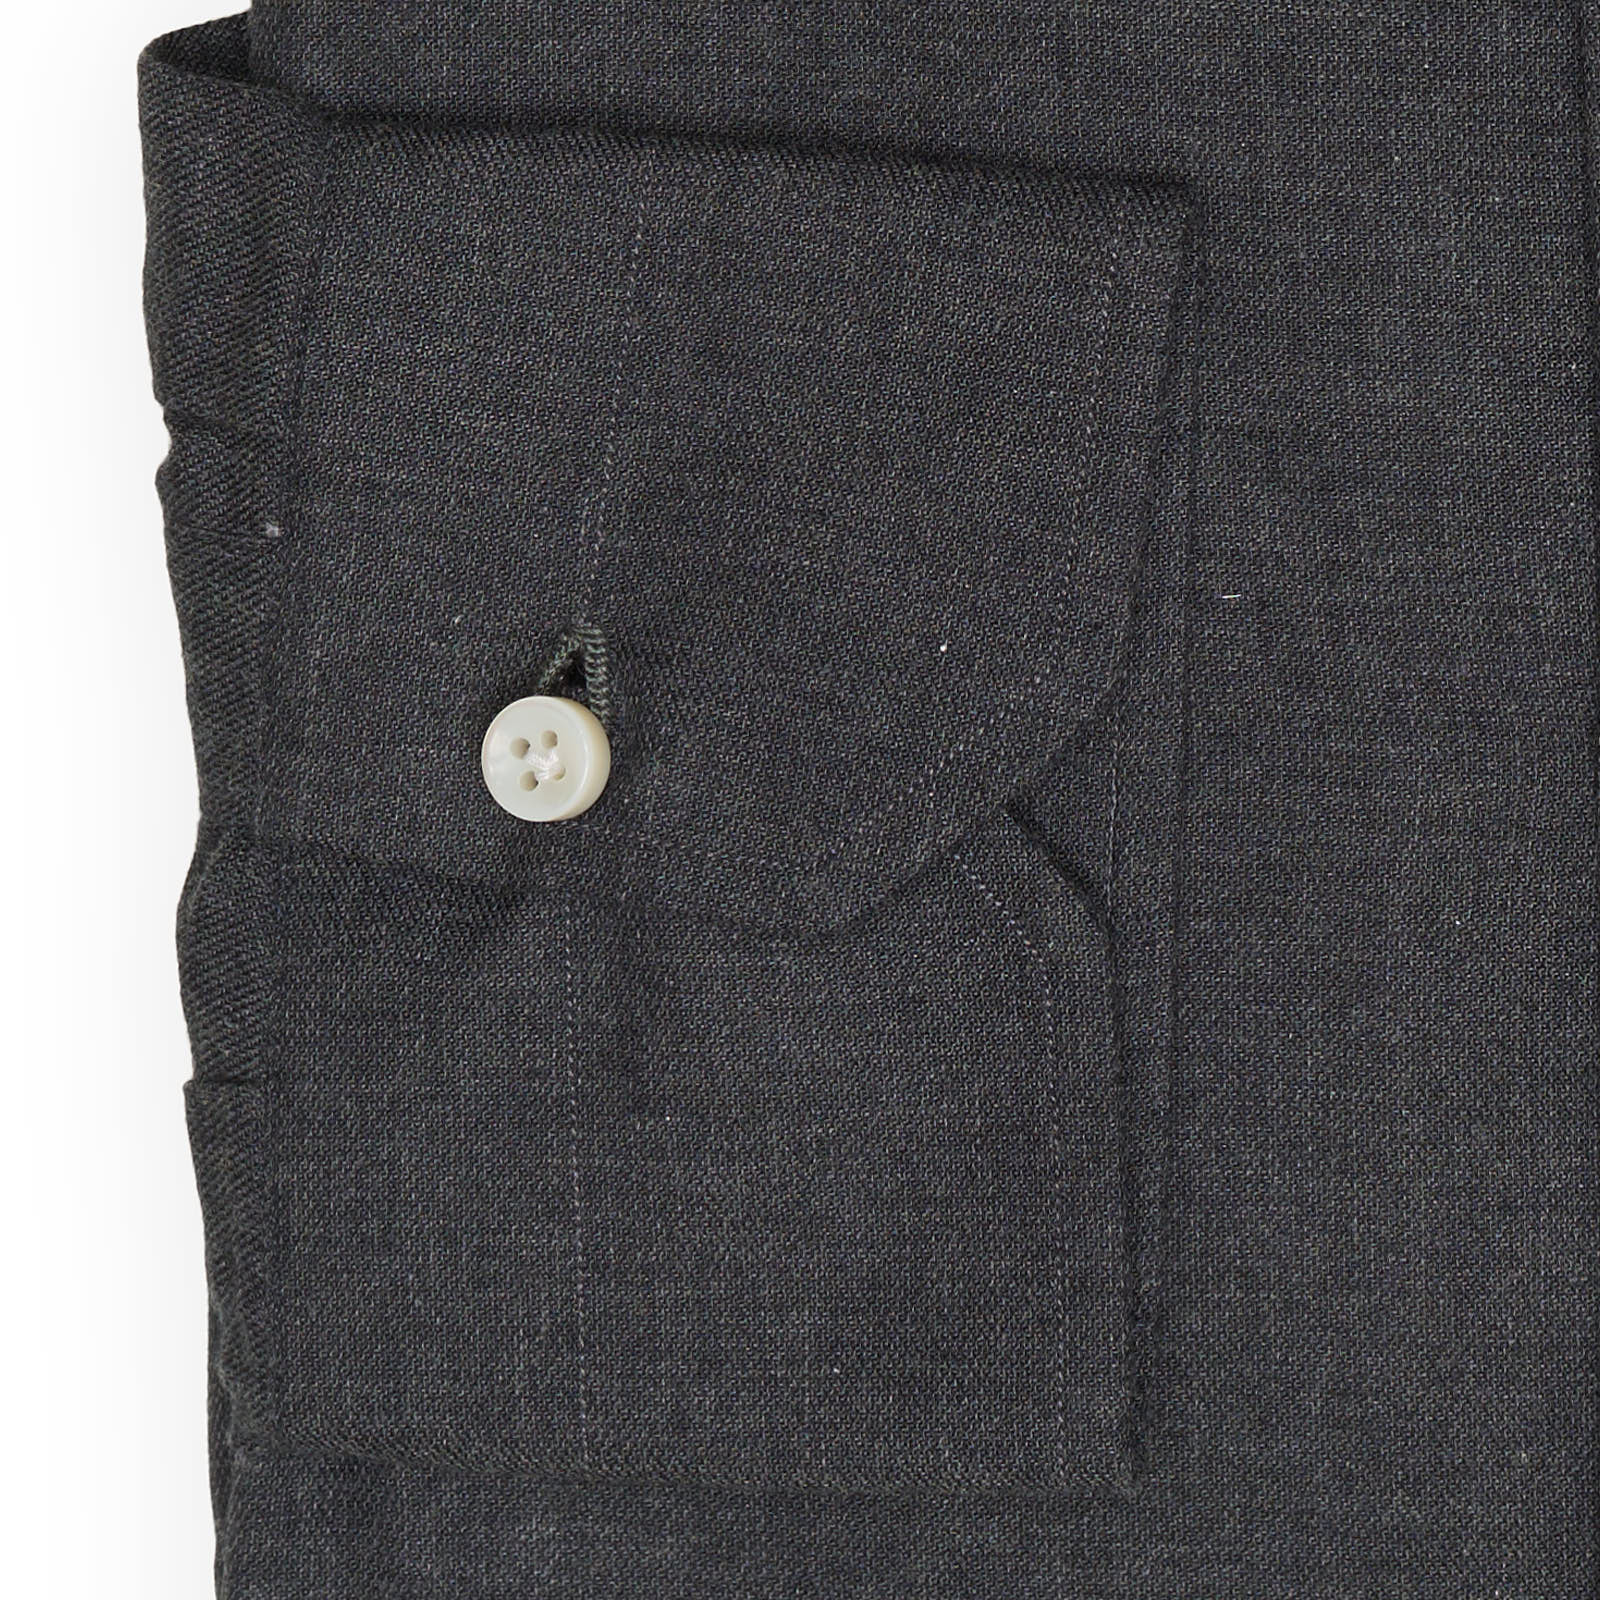 MATTABISCH for VANNUCCI Gray Cotton Dress Shirt EU 40 US 15.75